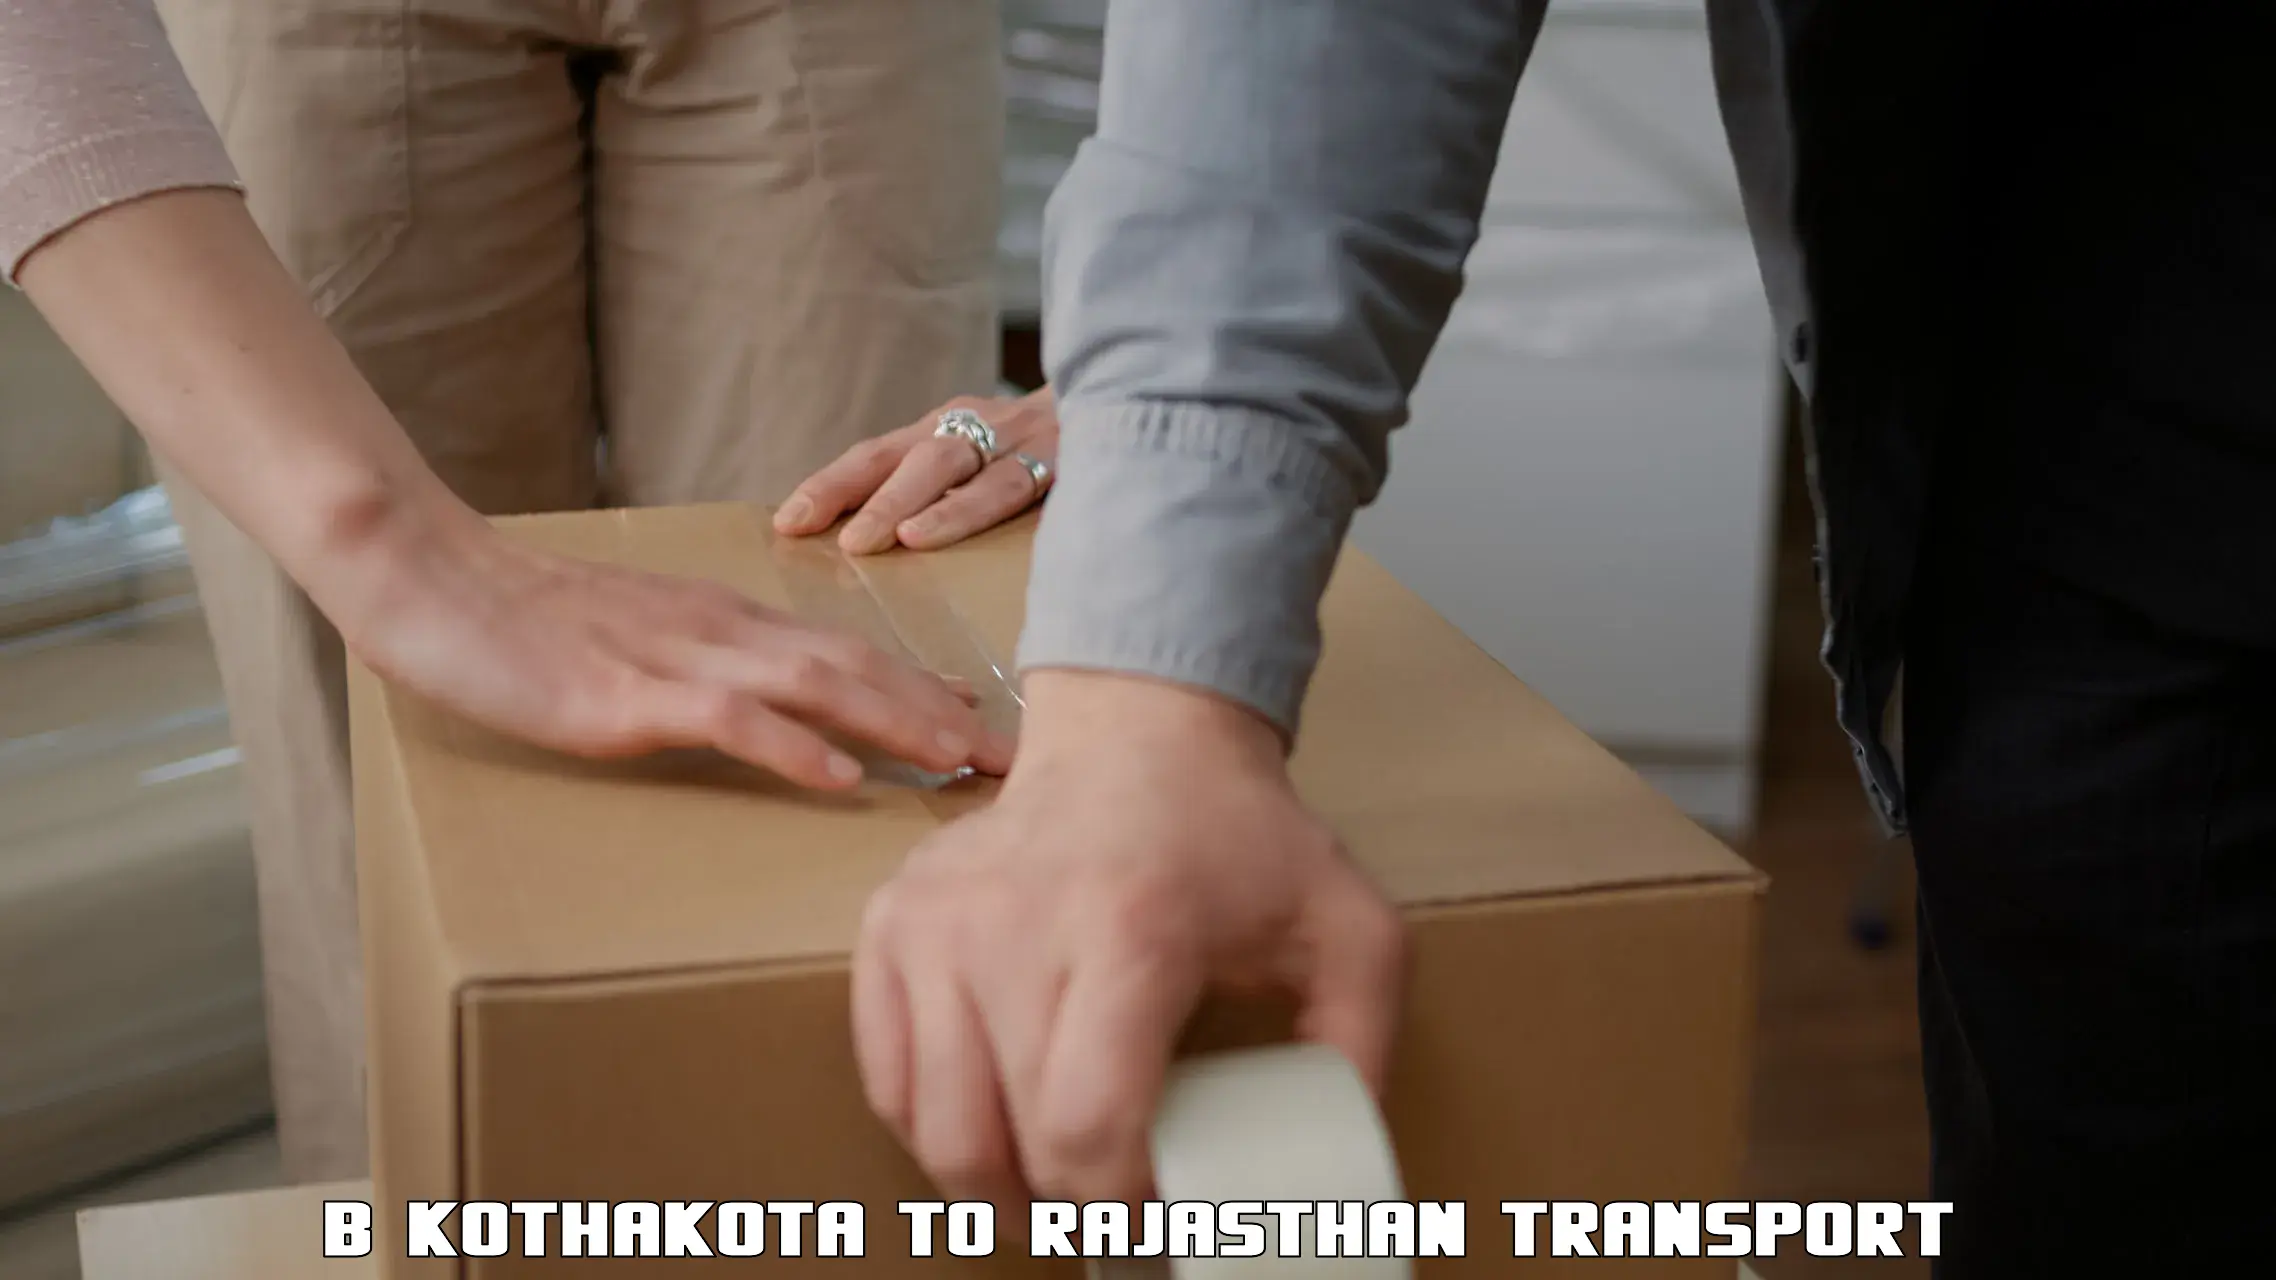 Truck transport companies in India in B Kothakota to Pratapgarh Rajasthan